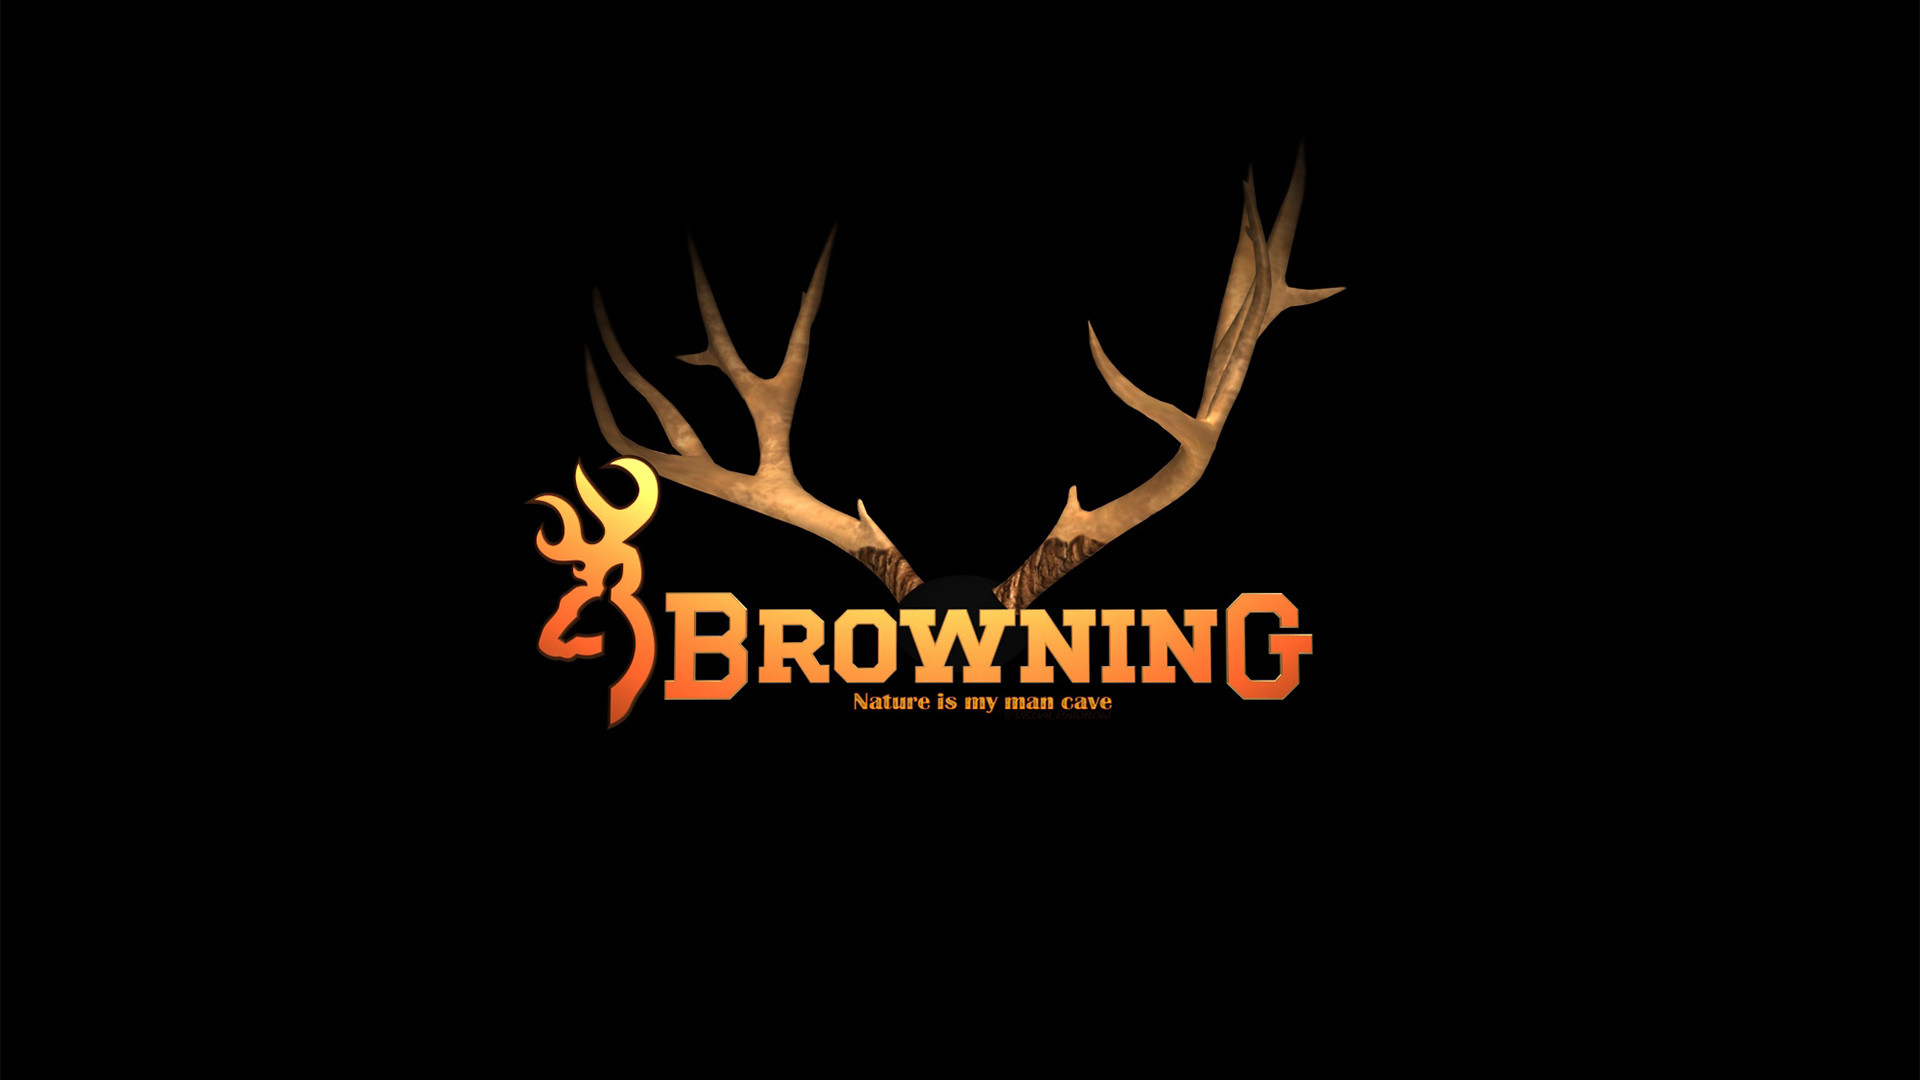 1920x1080 Browning Logo wallpaper - 949921